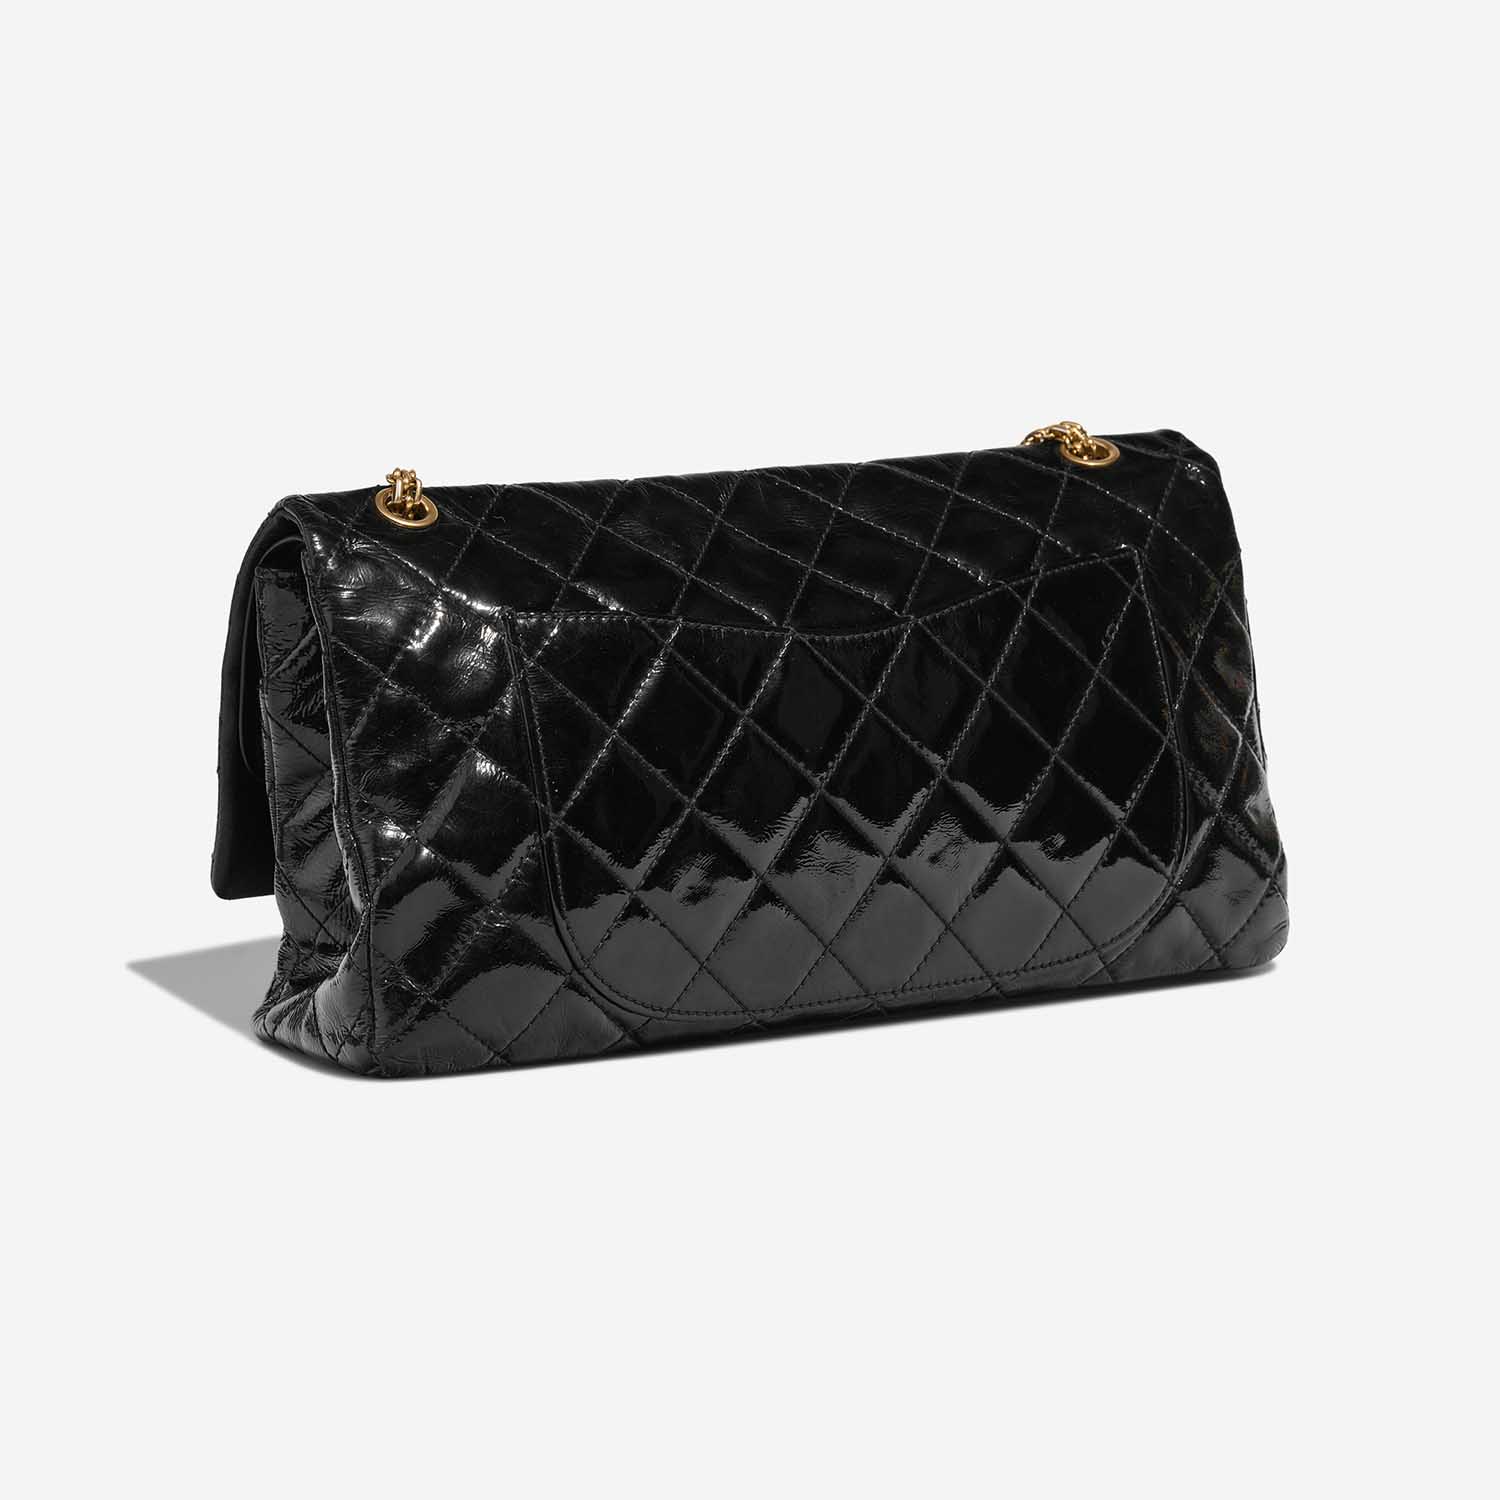 Chanel 255Reissue Black Side Back | Verkaufen Sie Ihre Designer-Tasche auf Saclab.com